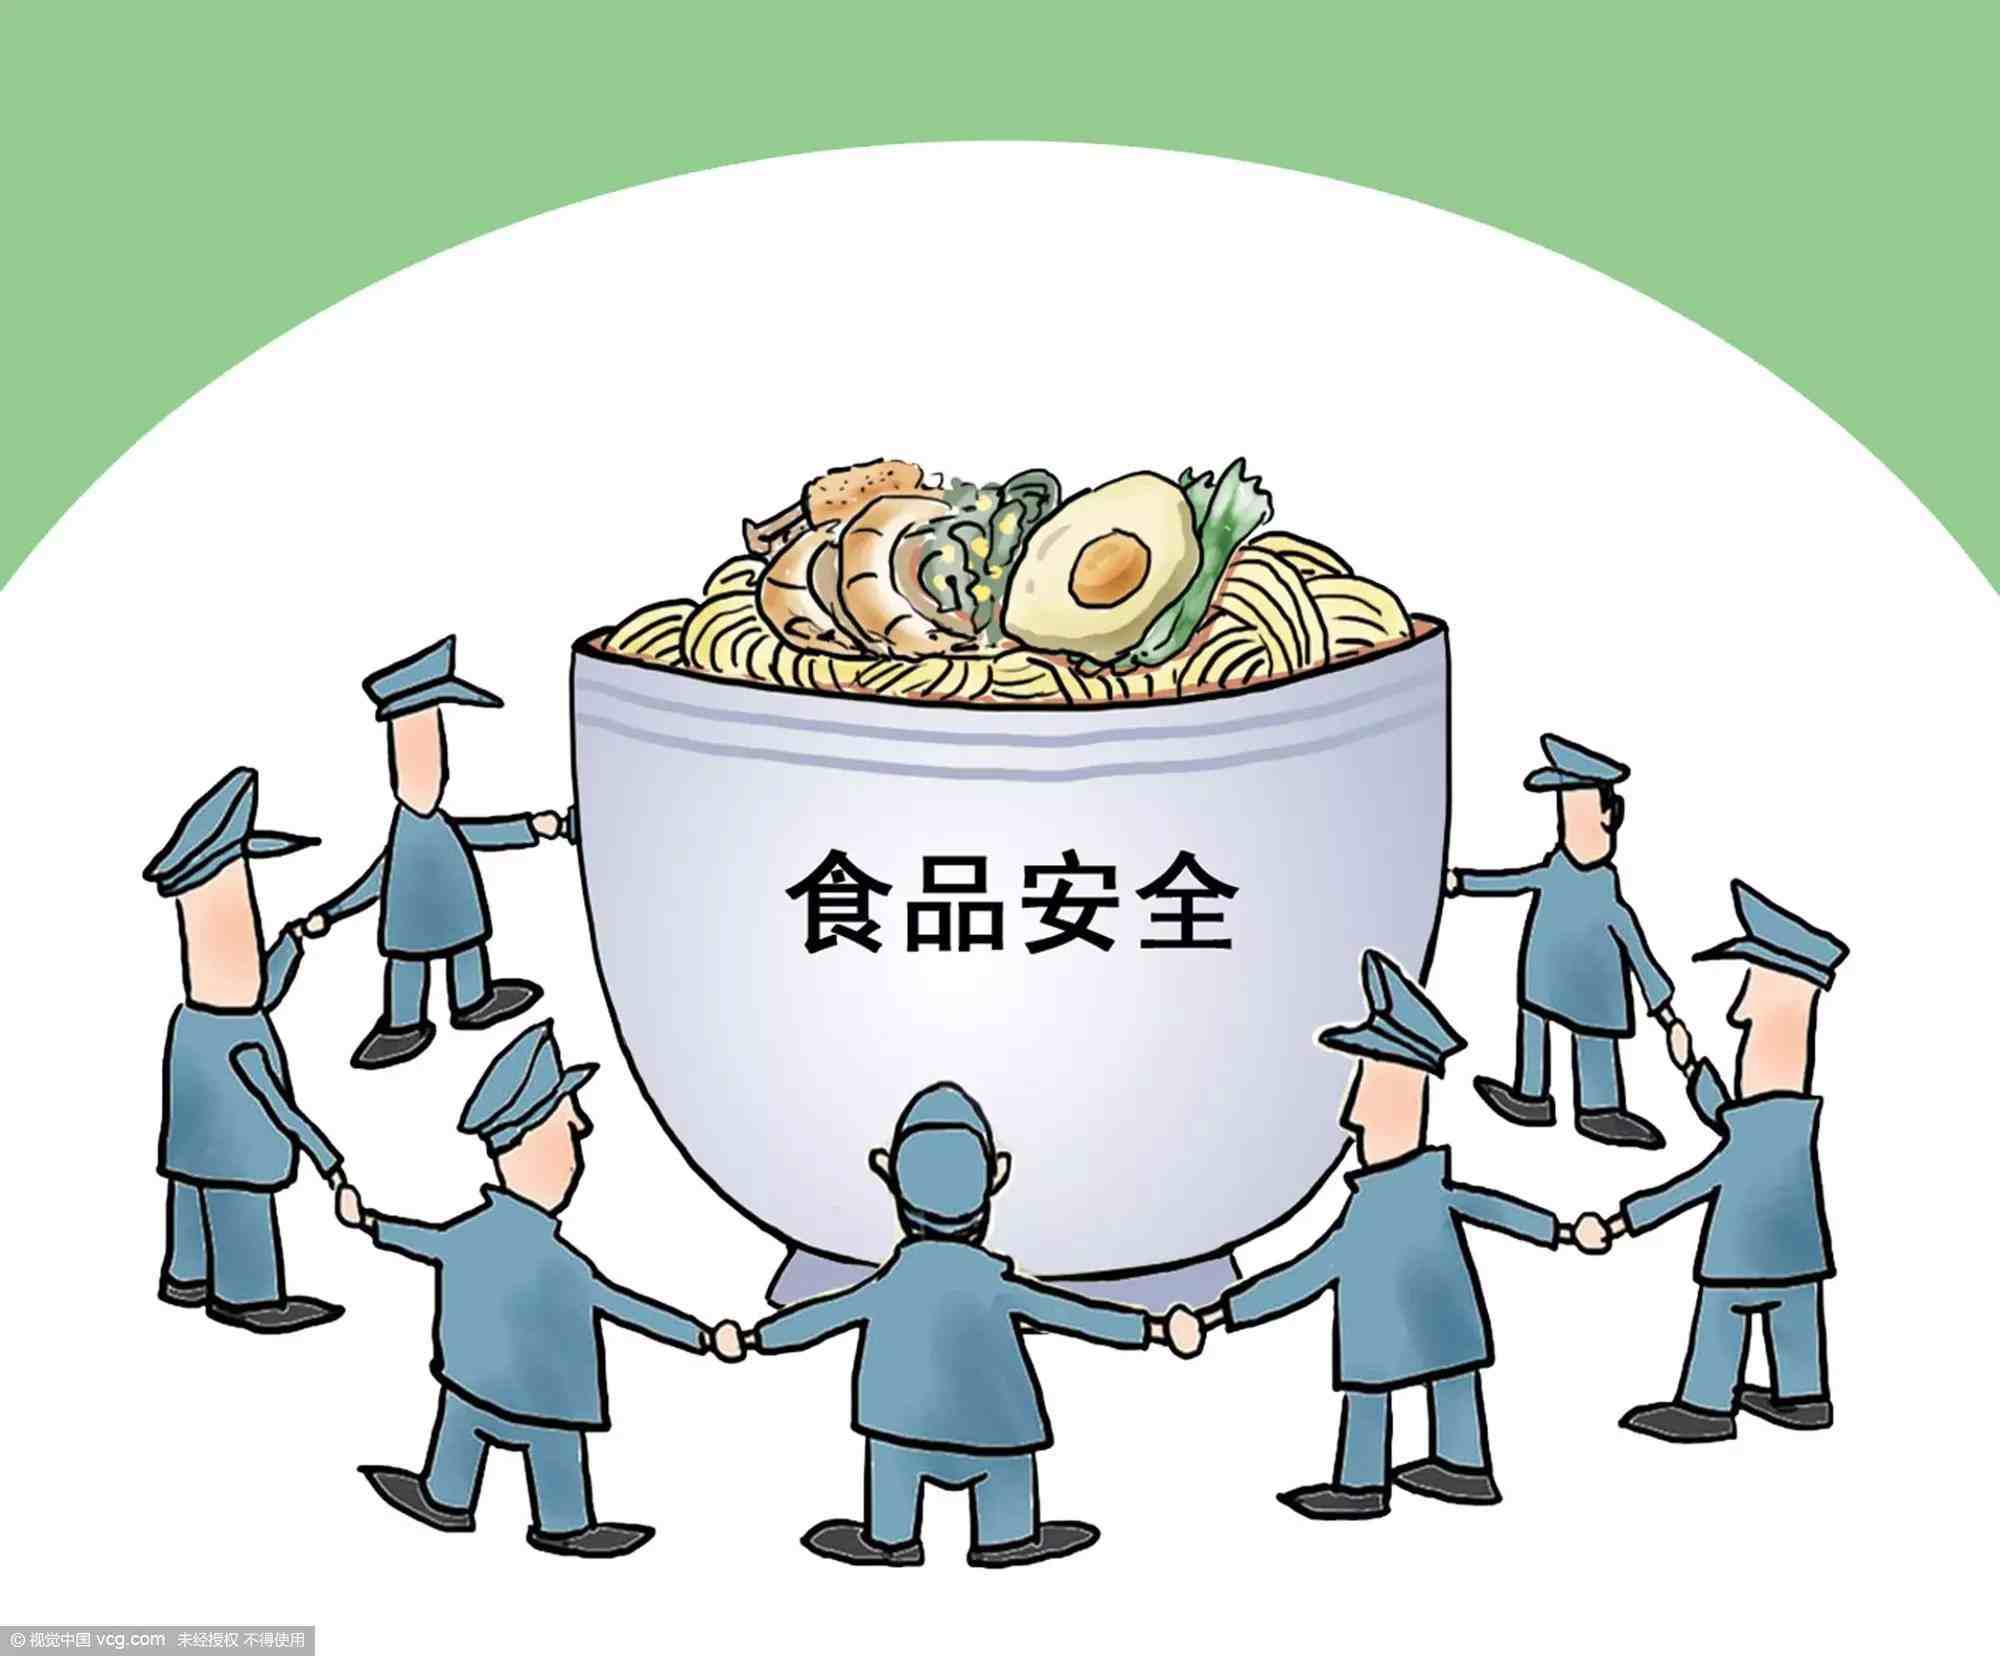 中国食品安全|中国食品安全现状